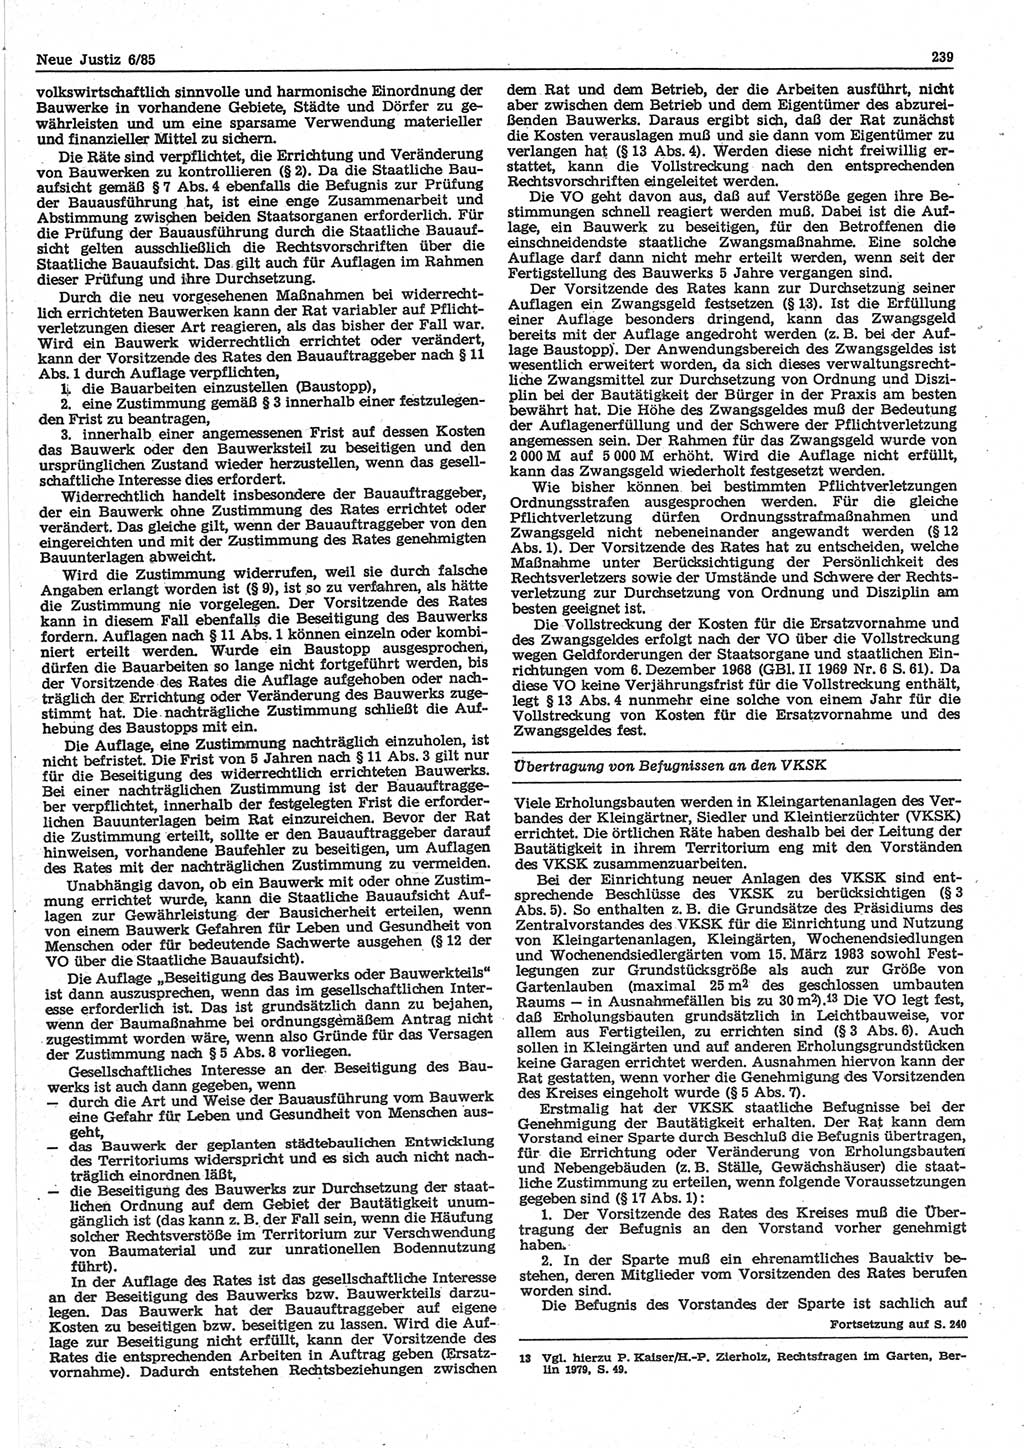 Neue Justiz (NJ), Zeitschrift für sozialistisches Recht und Gesetzlichkeit [Deutsche Demokratische Republik (DDR)], 39. Jahrgang 1985, Seite 239 (NJ DDR 1985, S. 239)